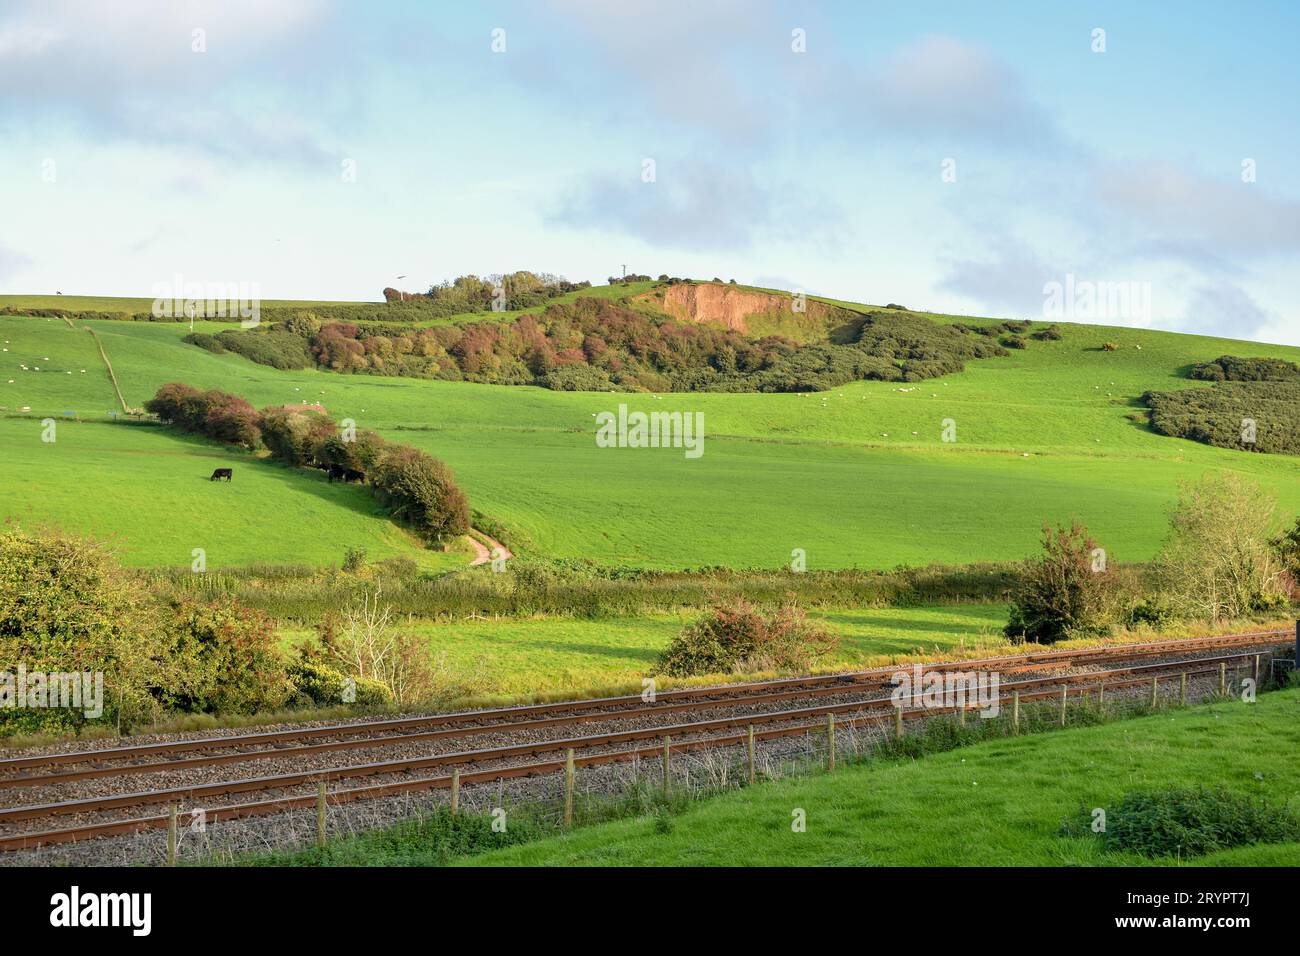 Una linea ferroviaria che attraversa la campagna della Cumbria, con bestiame visibile nei campi lontani. Foto Stock